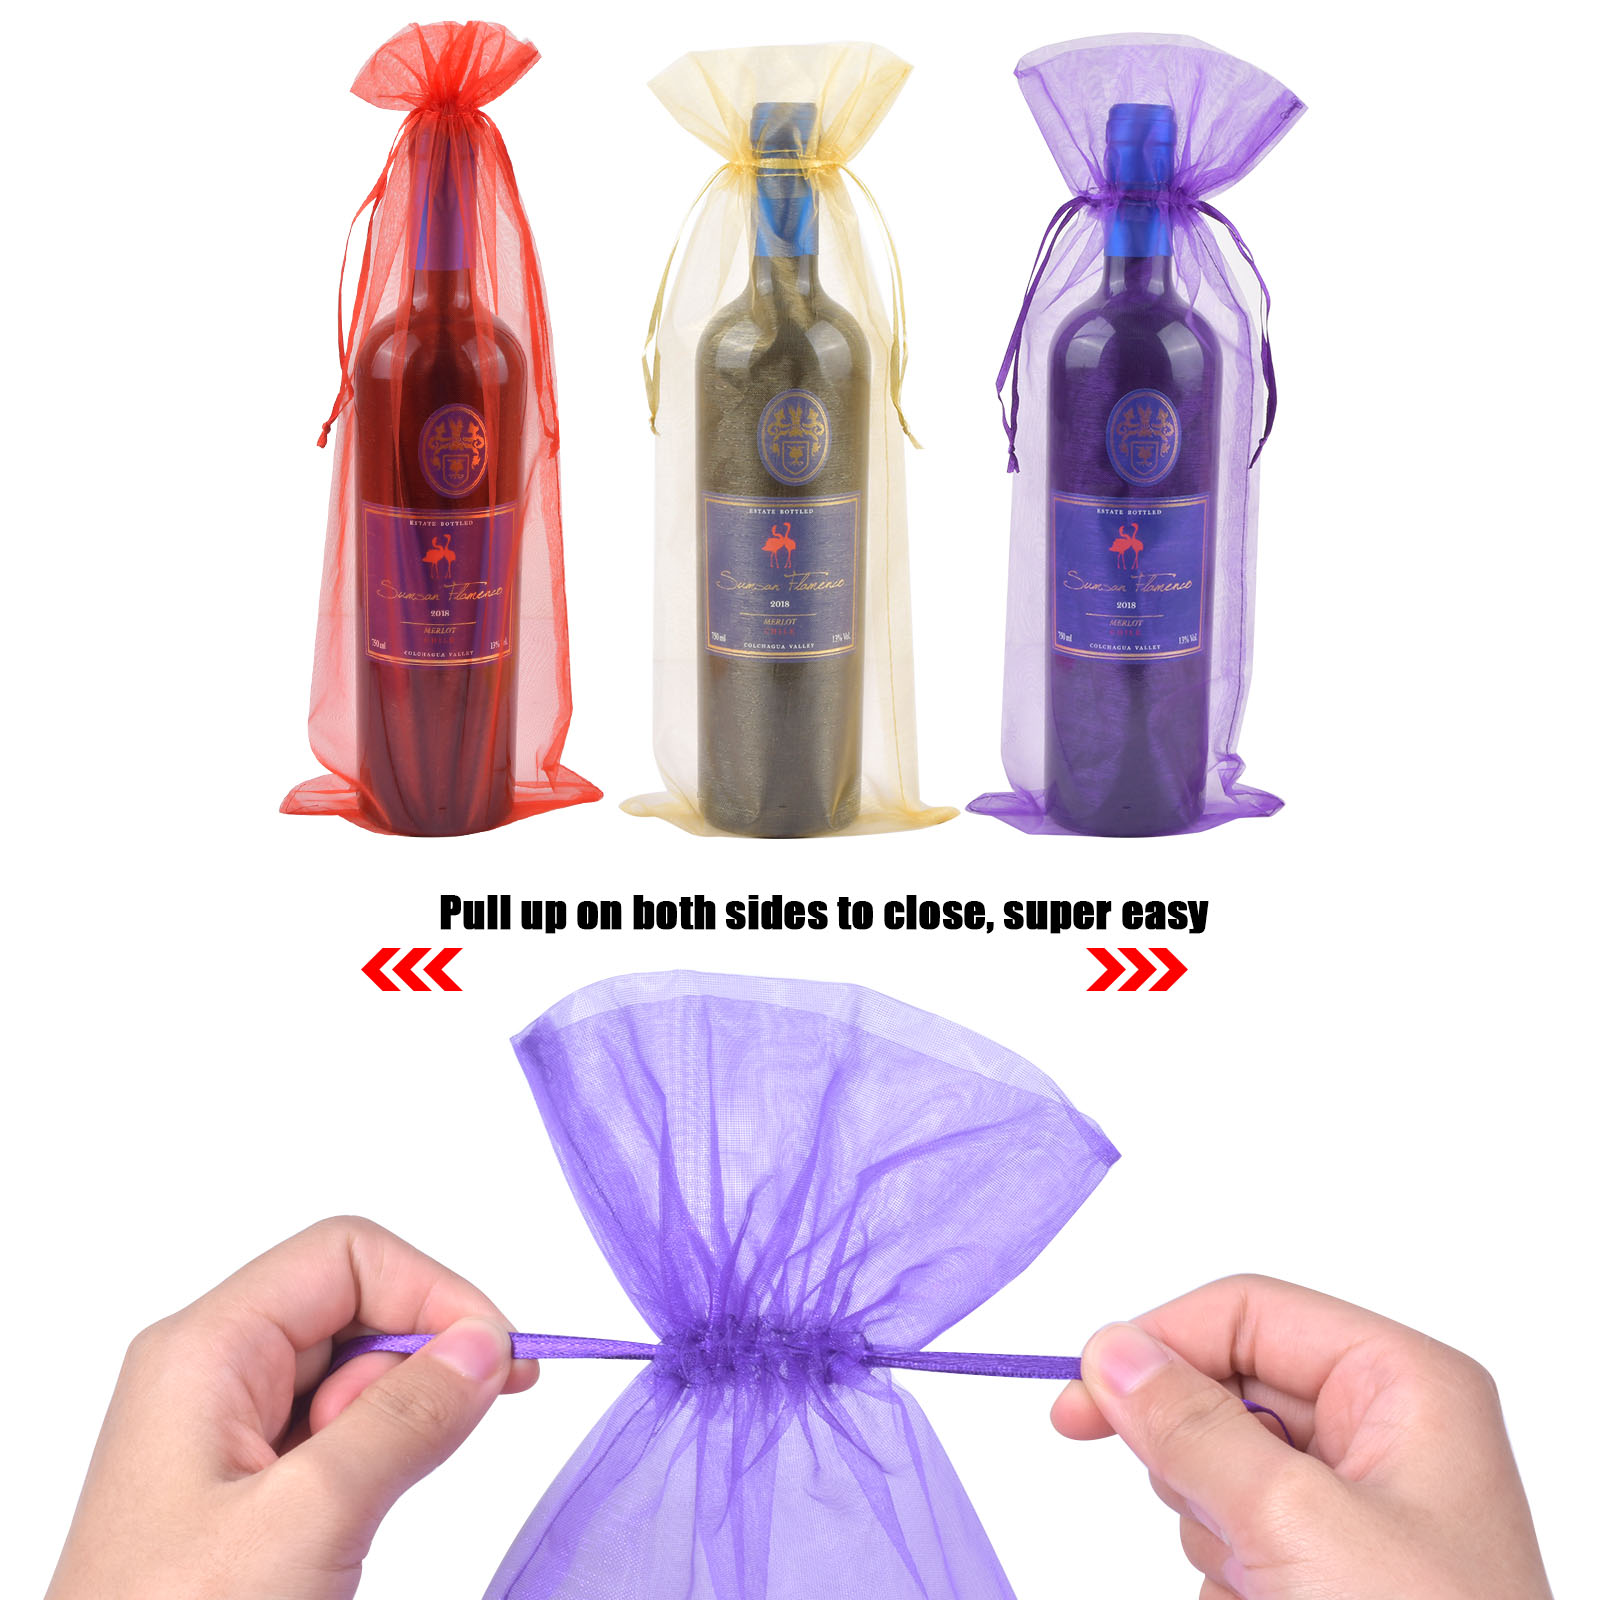 img.kwcdn.com/product/organza-wine-bags/d69d2f15w9